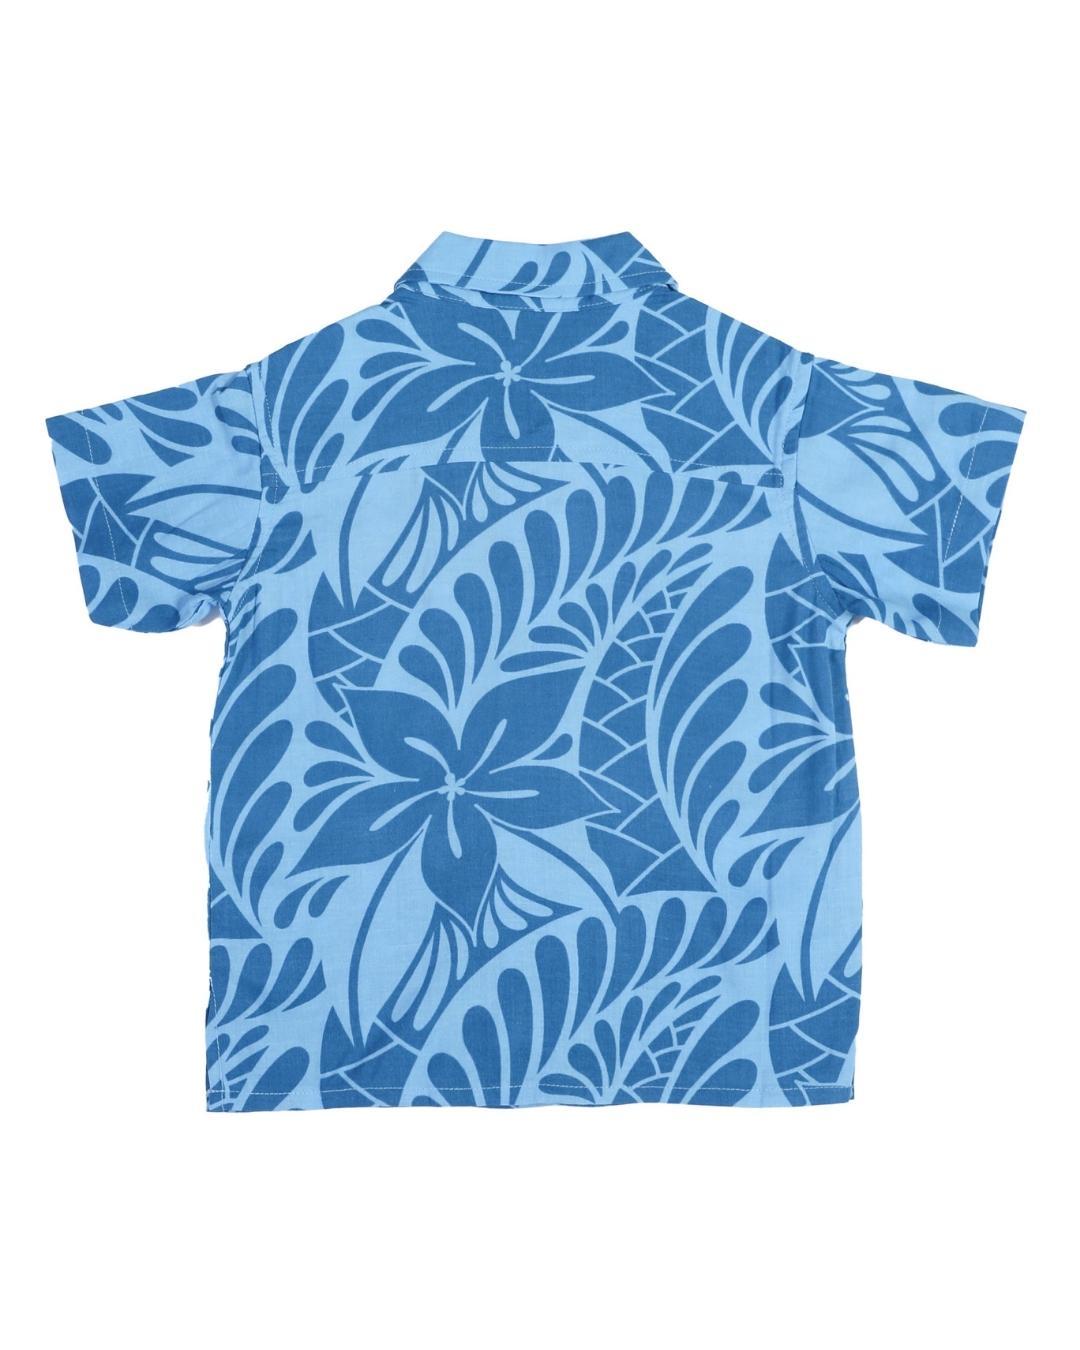 Kanoa II Tween Short Sleeve Shirt - Lagoon Blue